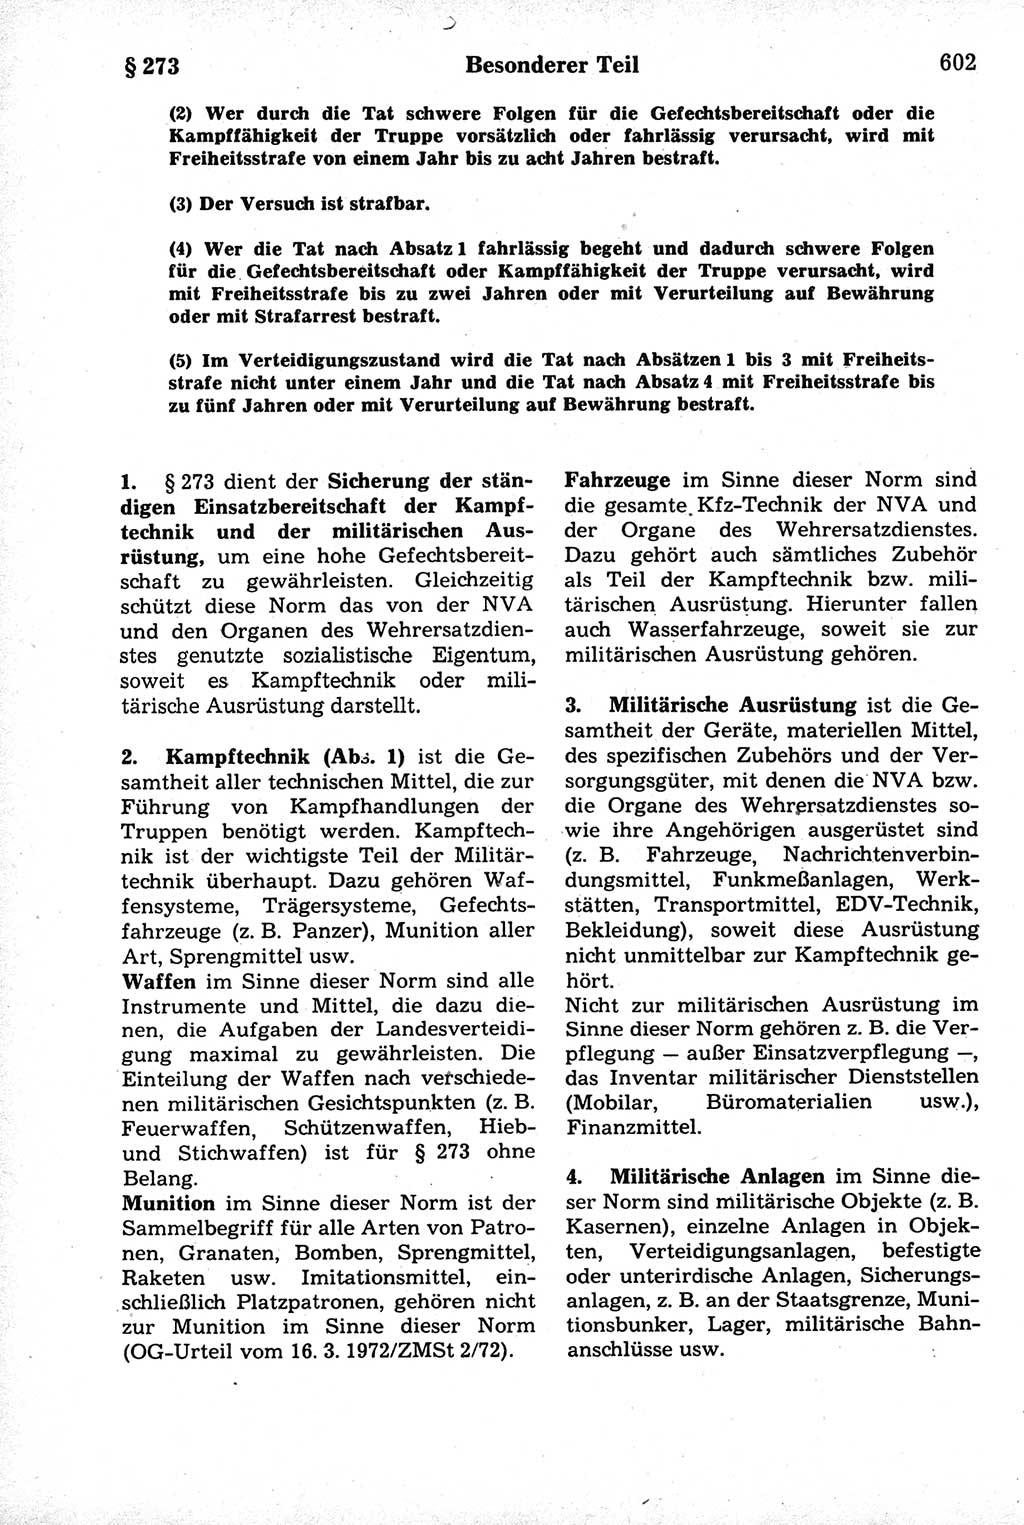 Strafrecht der Deutschen Demokratischen Republik (DDR), Kommentar zum Strafgesetzbuch (StGB) 1981, Seite 602 (Strafr. DDR Komm. StGB 1981, S. 602)